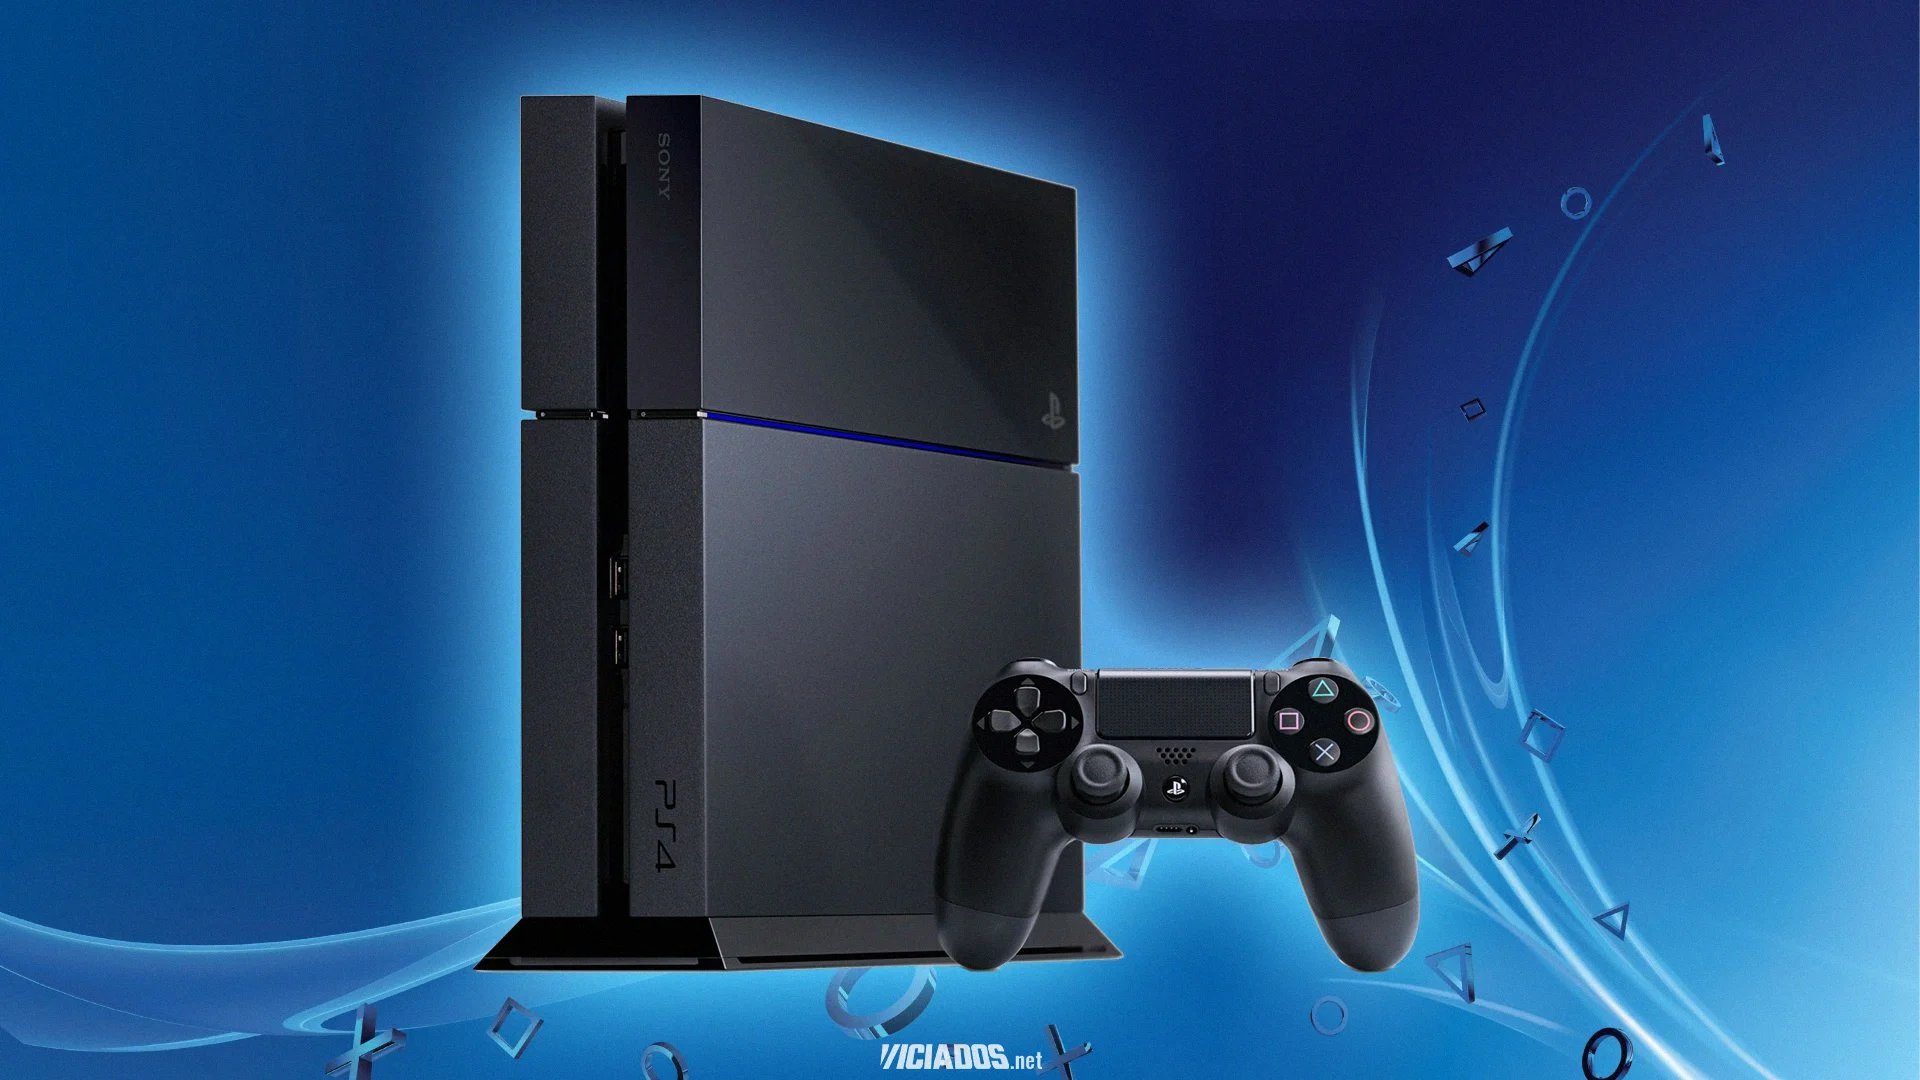 Grande exclusivo do PlayStation 4 está com um incrível desconto de 67% 2023 Viciados